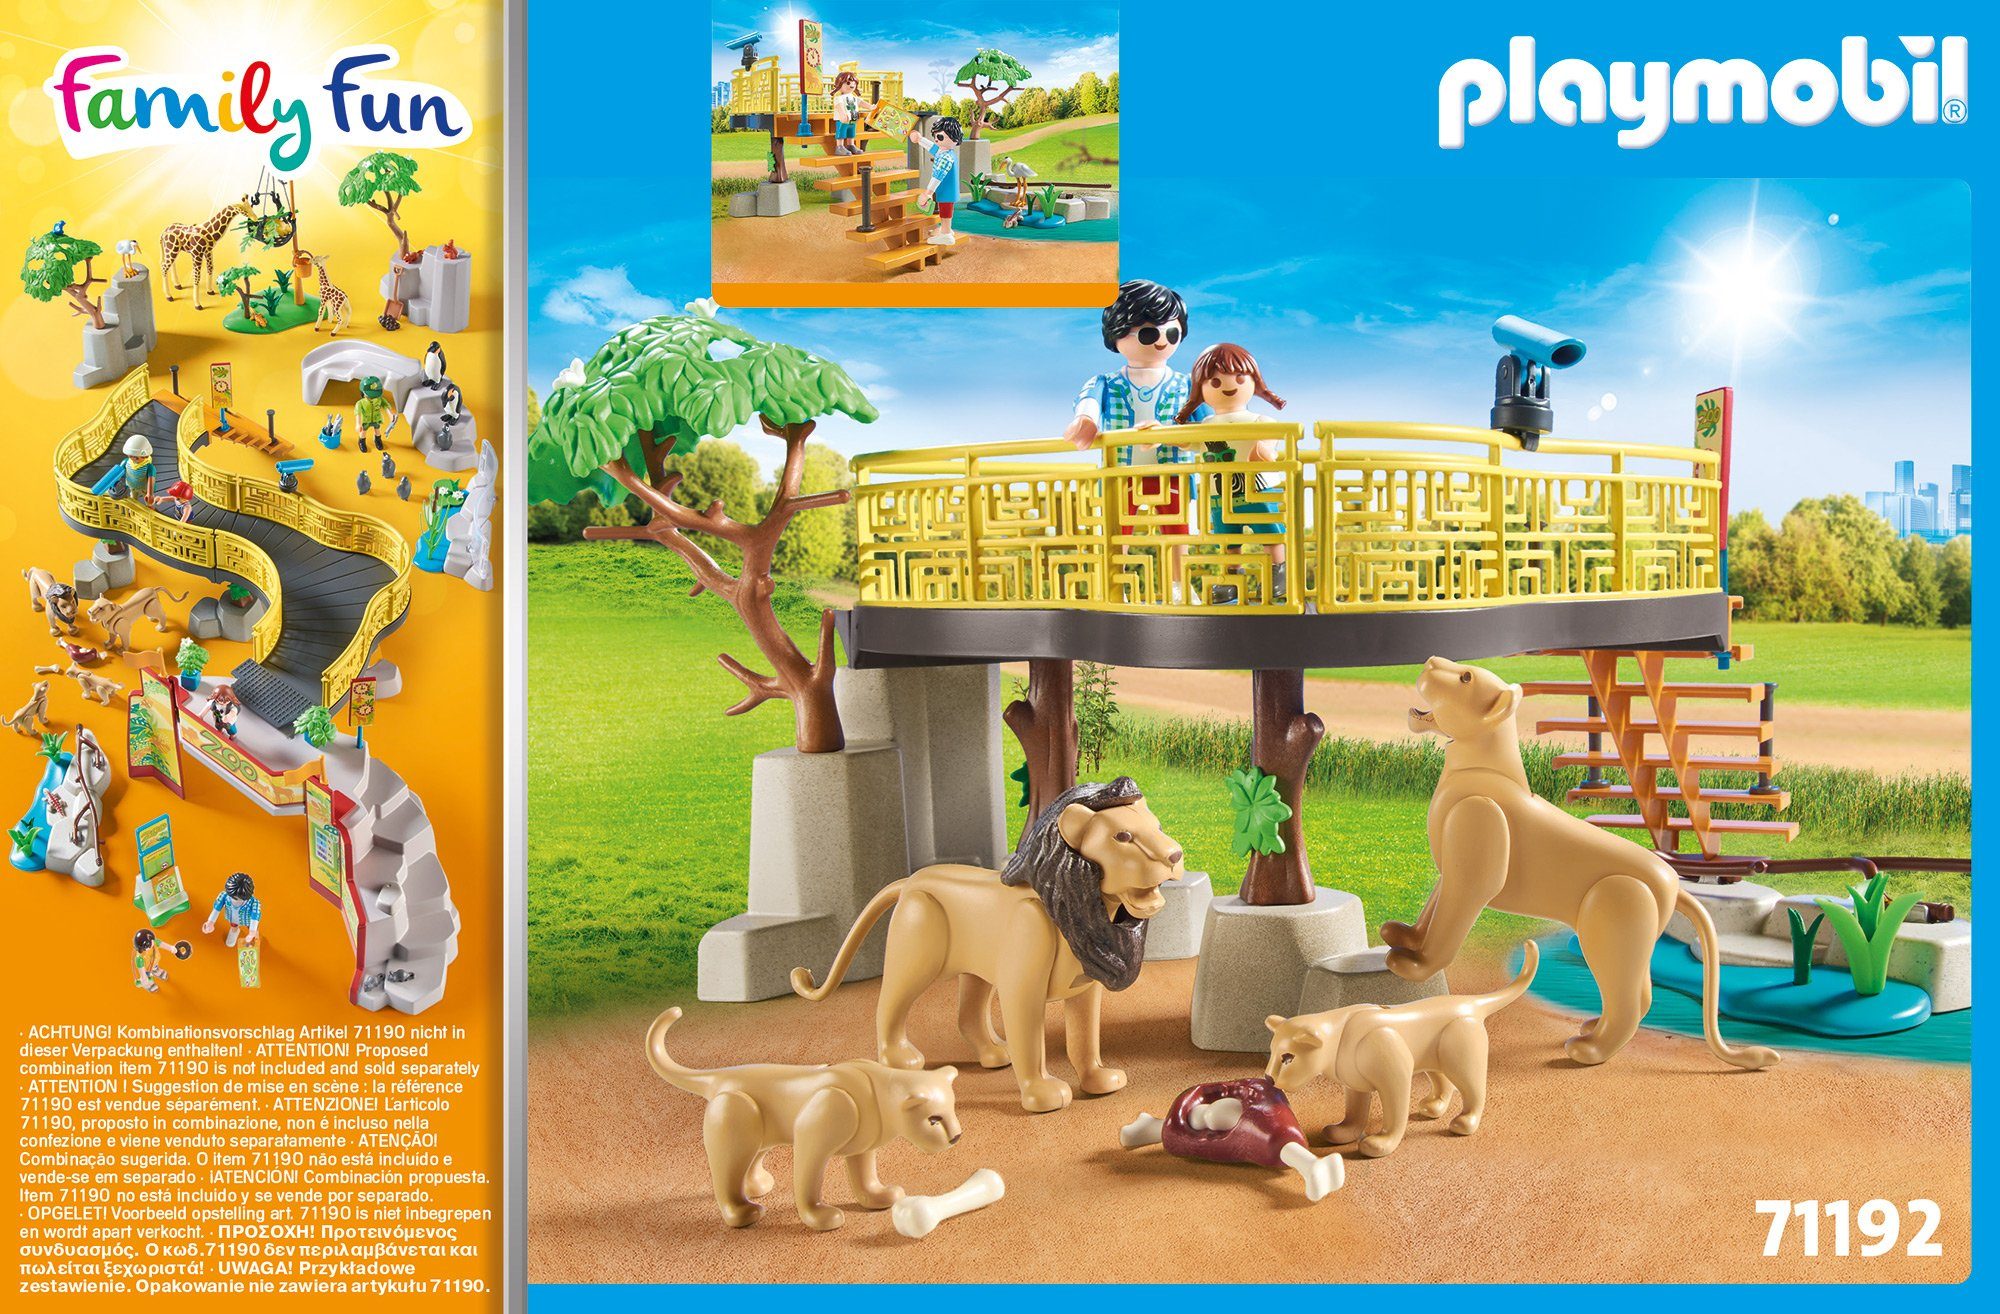 Family Freigehege in Löwen (71192), (58 Playmobil® Fun, Germany im St), Konstruktions-Spielset Made